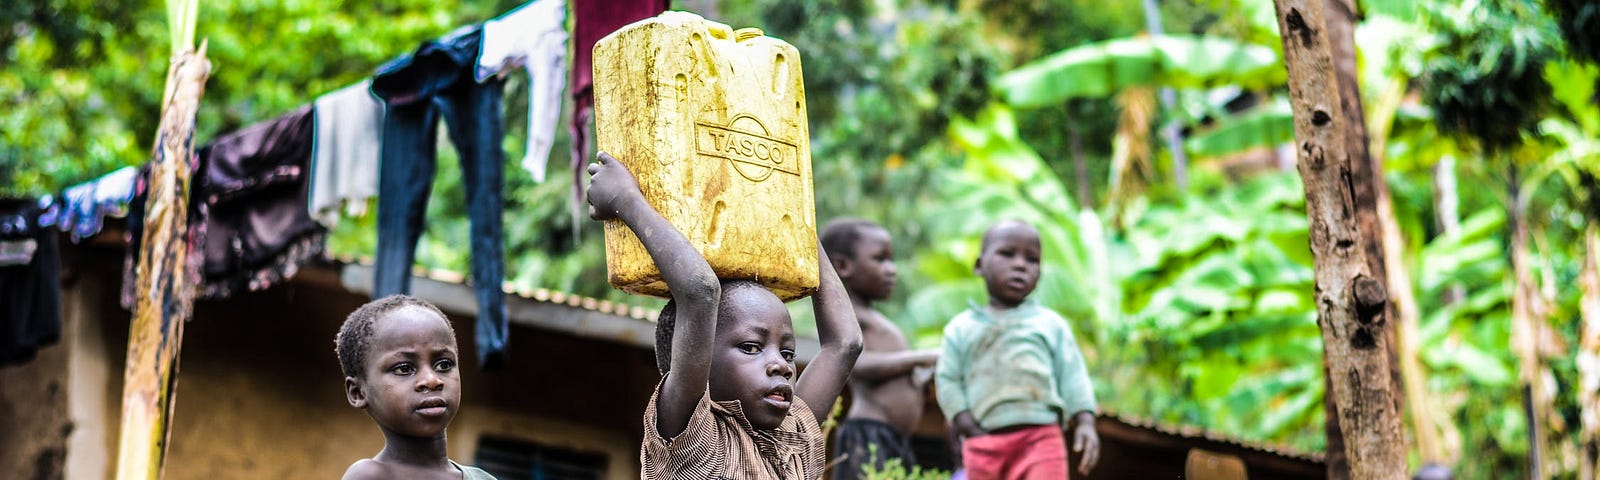 Copii din Africa într-un cartier sărac. Unul cară o canistră pe cap.